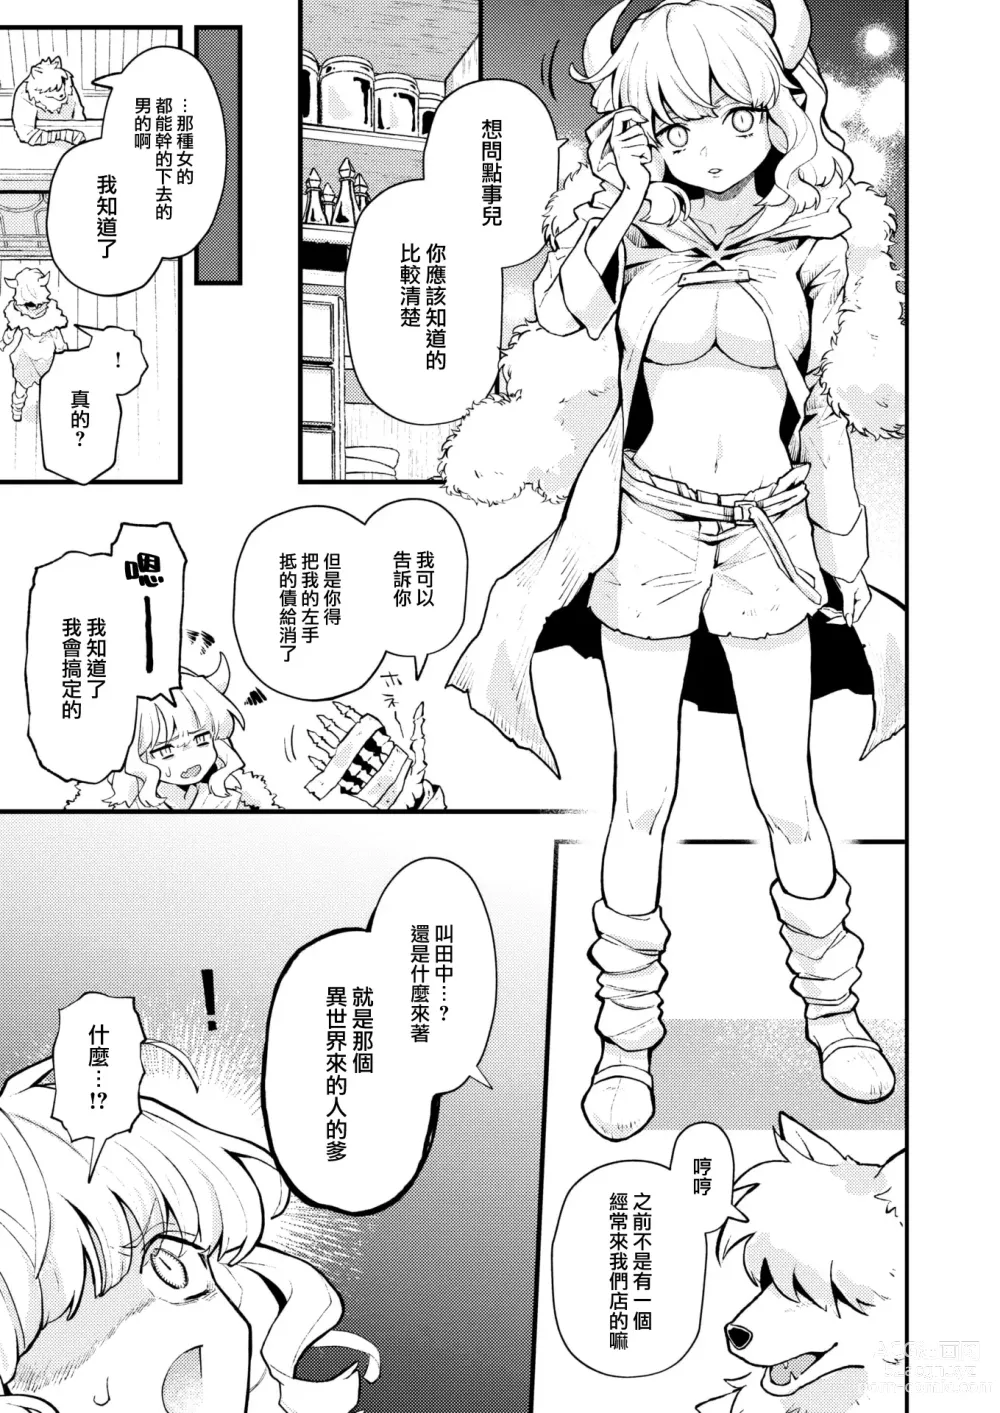 Page 6 of manga Shakkin Jigoku wa Owaranai